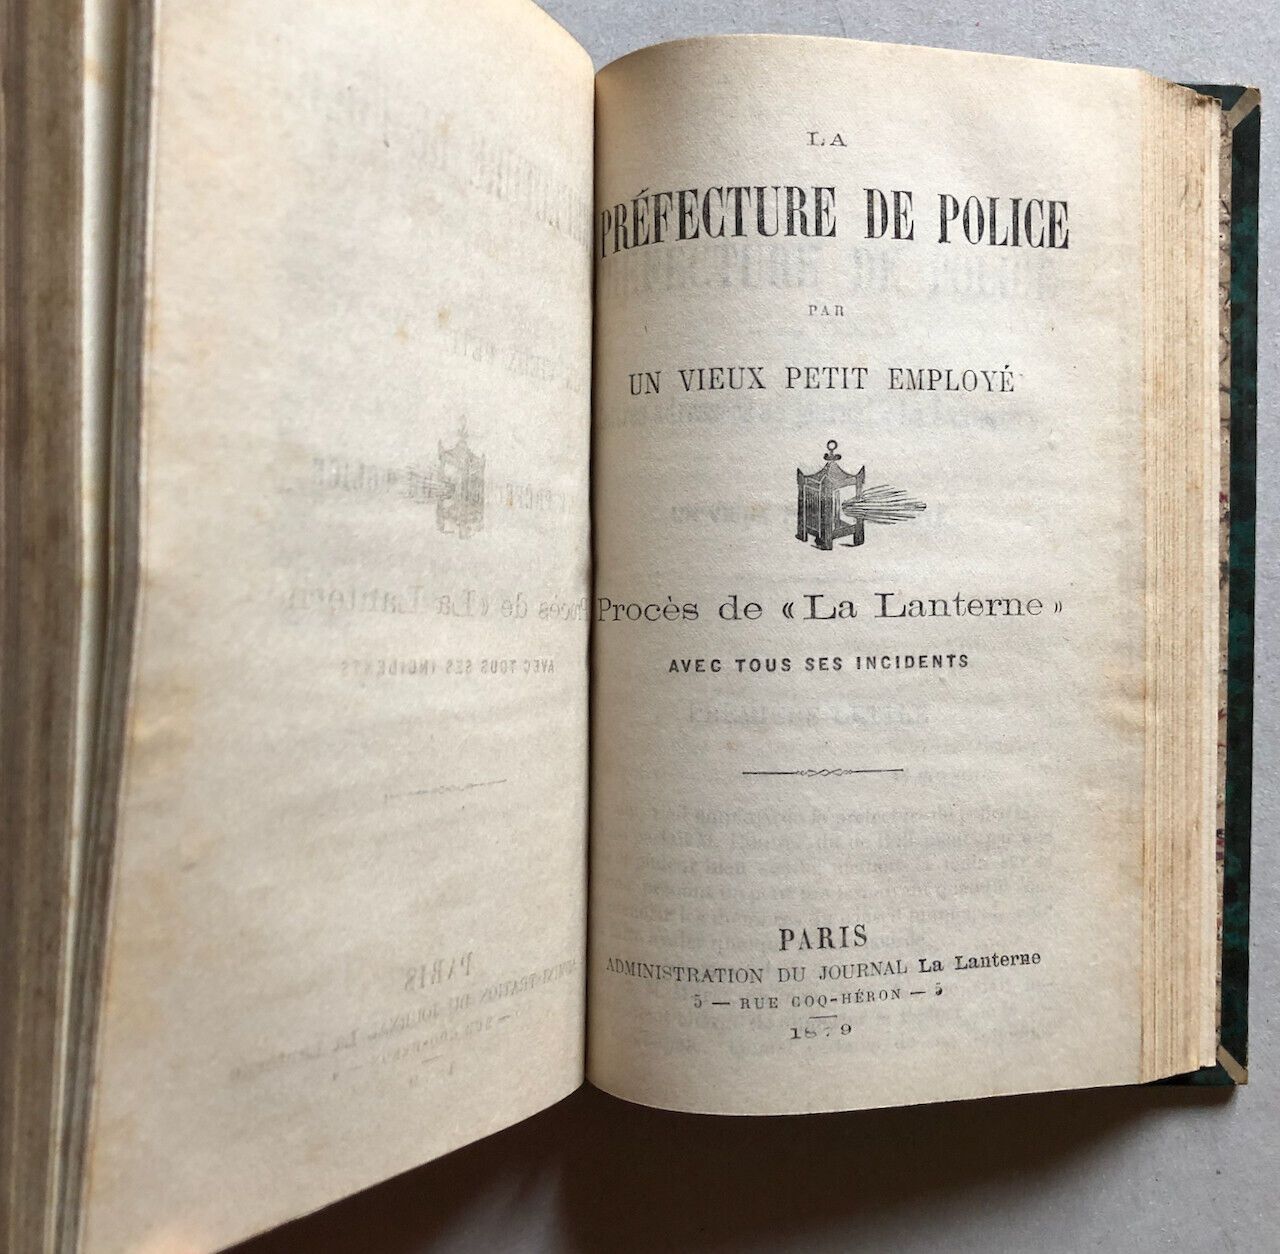 Proudhon — La Révolution sociale + Veuve d'un soldat +3 — é.o. — Garnier — 1852.